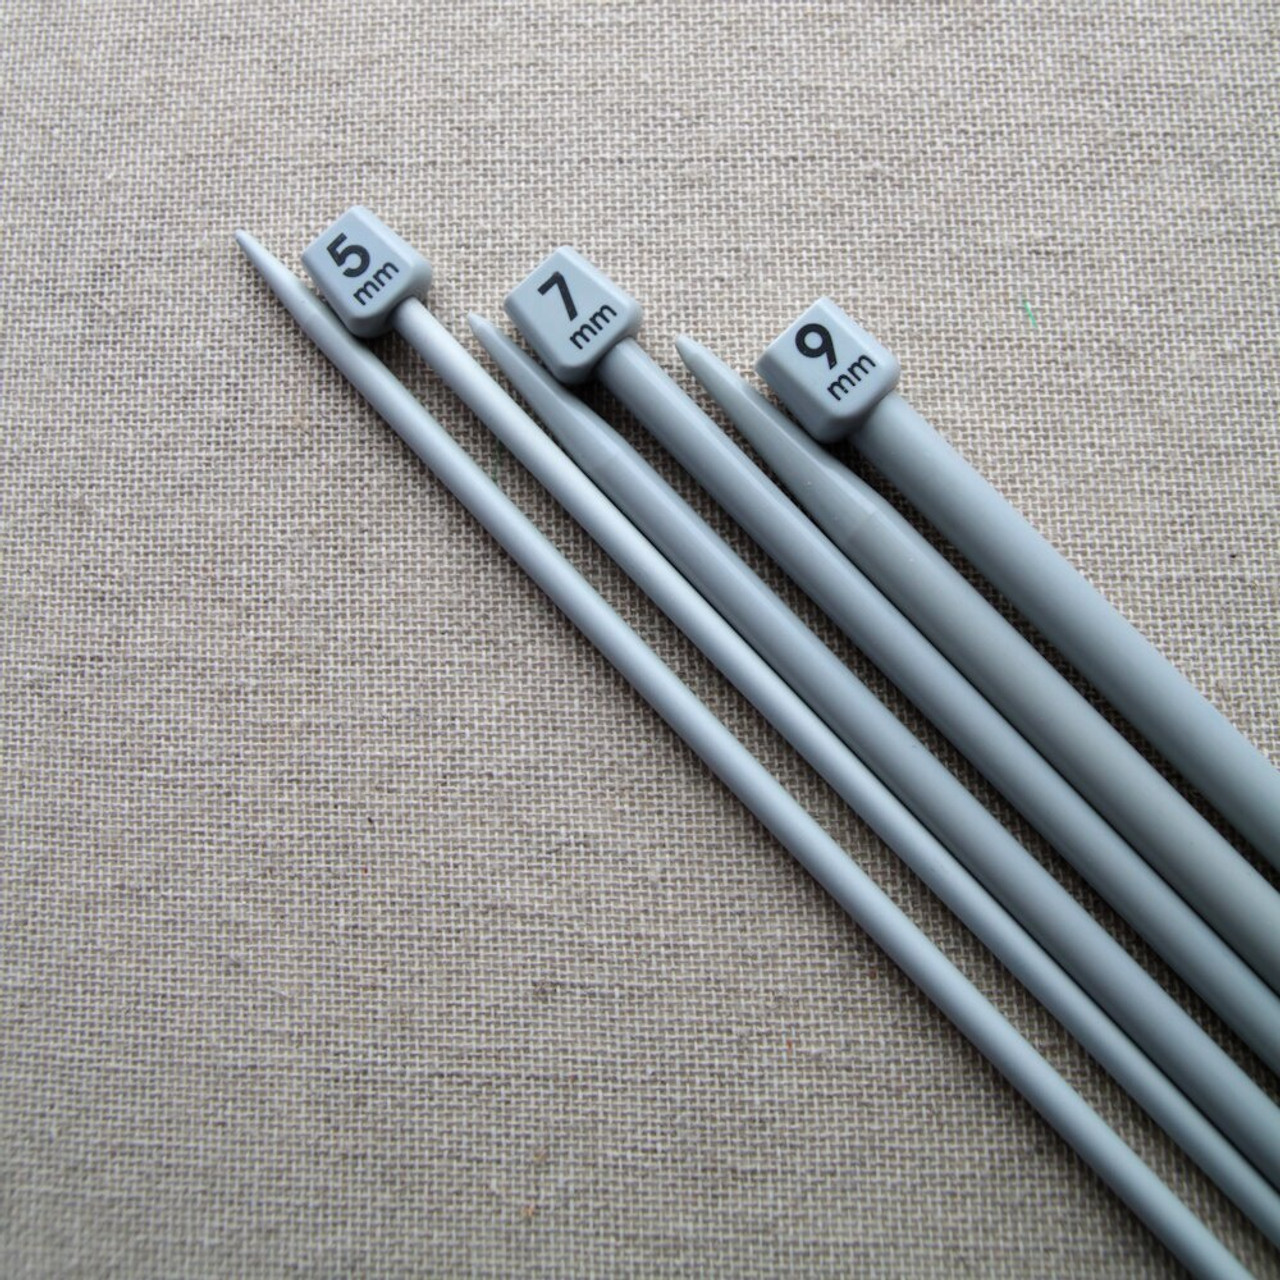 Knitting Needles 7 Size 30cm By Pony